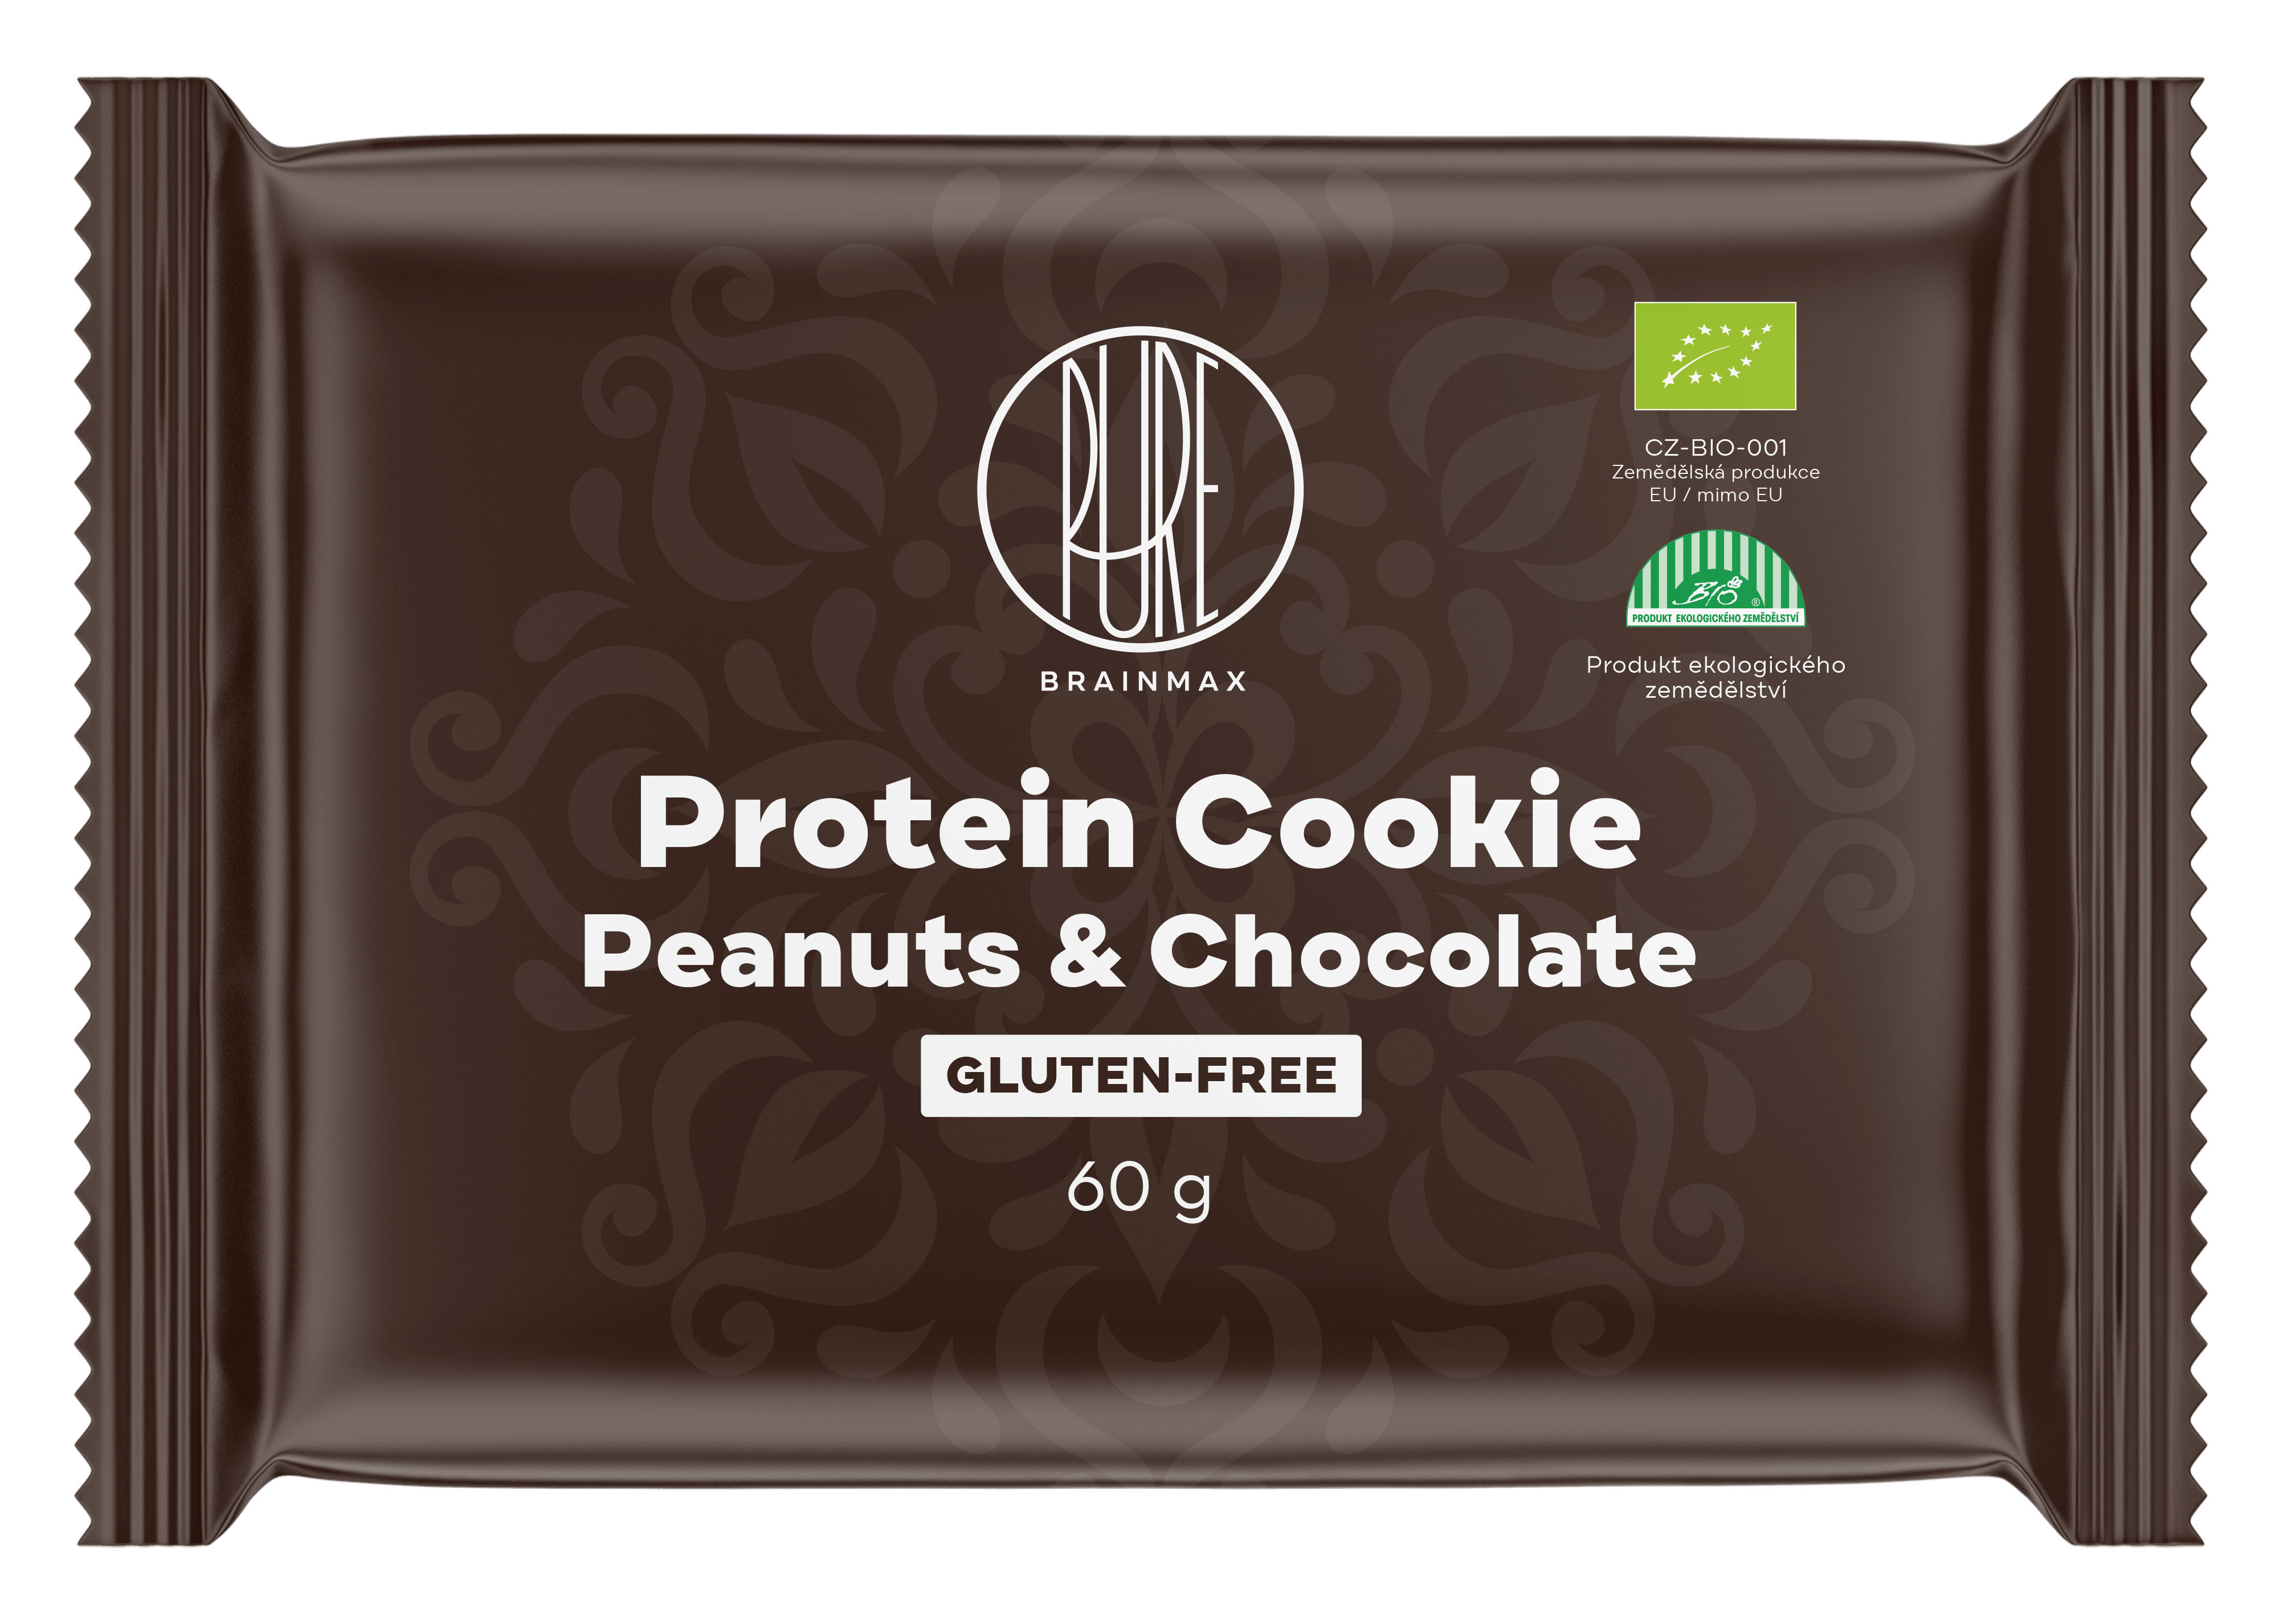 Levně BrainMax Pure Protein Cookie, Arašídy & Čokoláda, BIO, 60 g Proteinová sušenka s hořkou čokoládou a arašídy / *CZ-BIO-001 certifikát